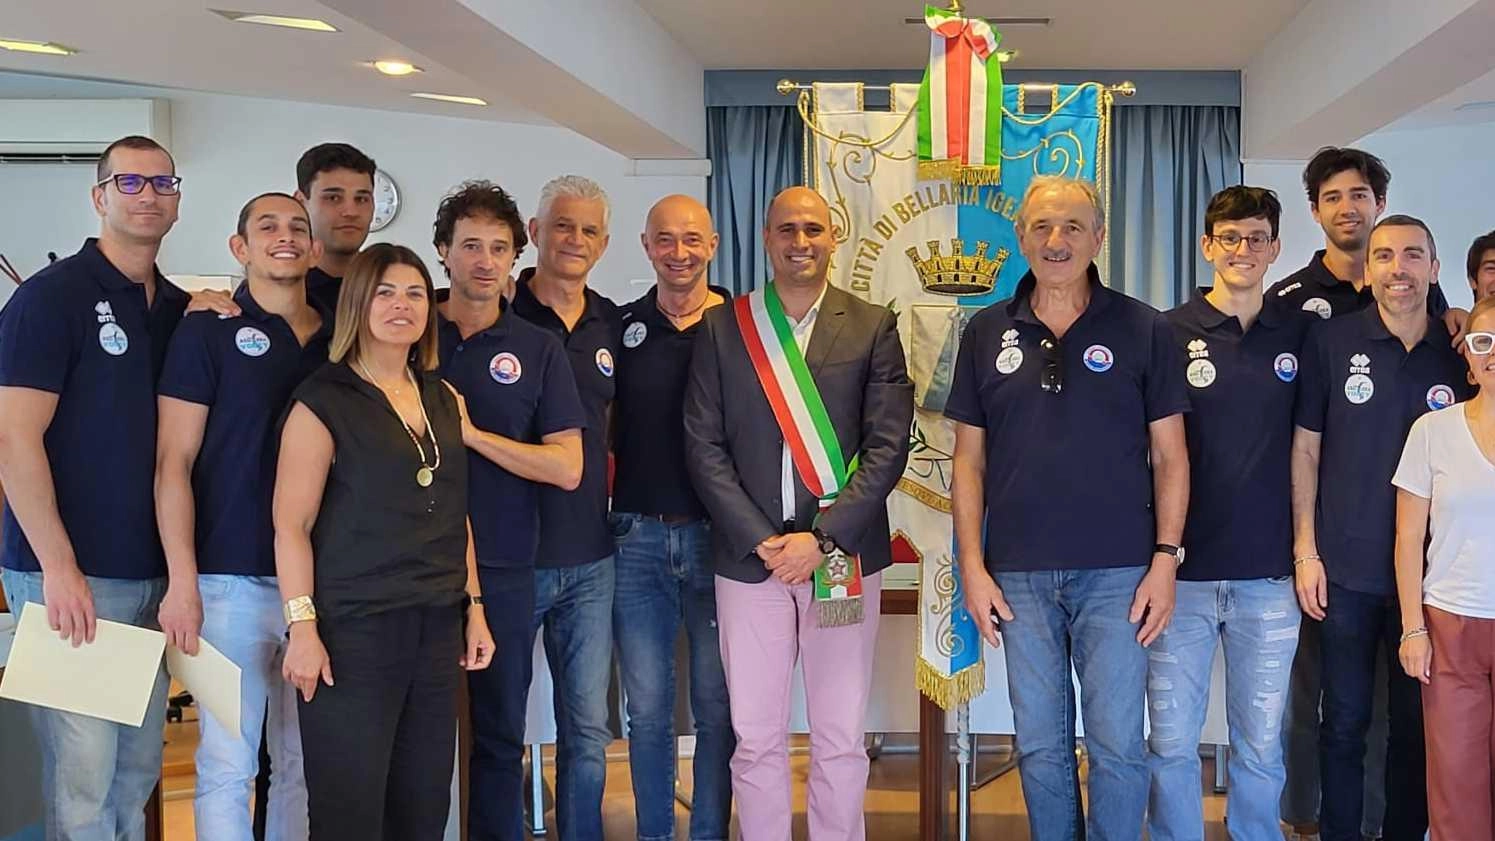 La Dinamo Volley di Bellaria è stata festeggiata in Comune per la vittoria in campionato. Con 20 vittorie su 22 partite, la squadra si prepara per la Serie B.